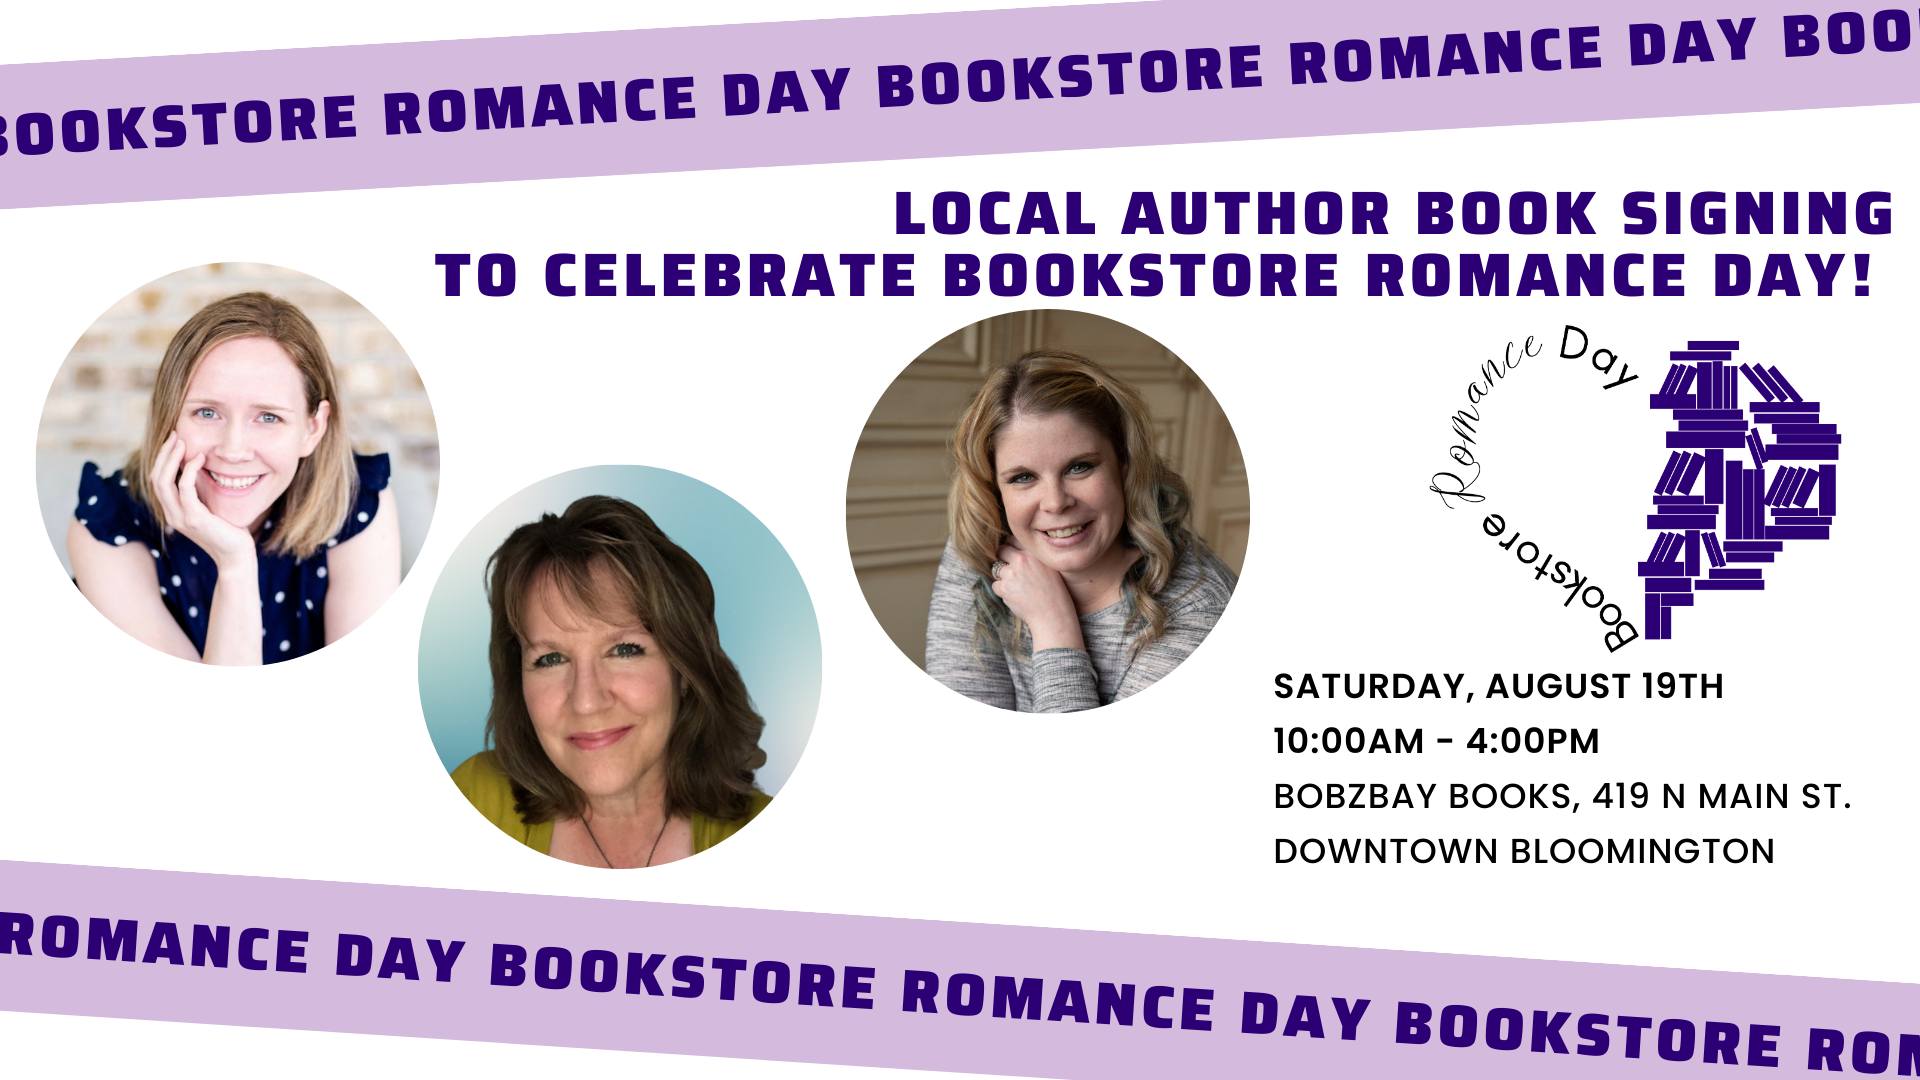 Bookstore Romance Day at Bobzbay Books